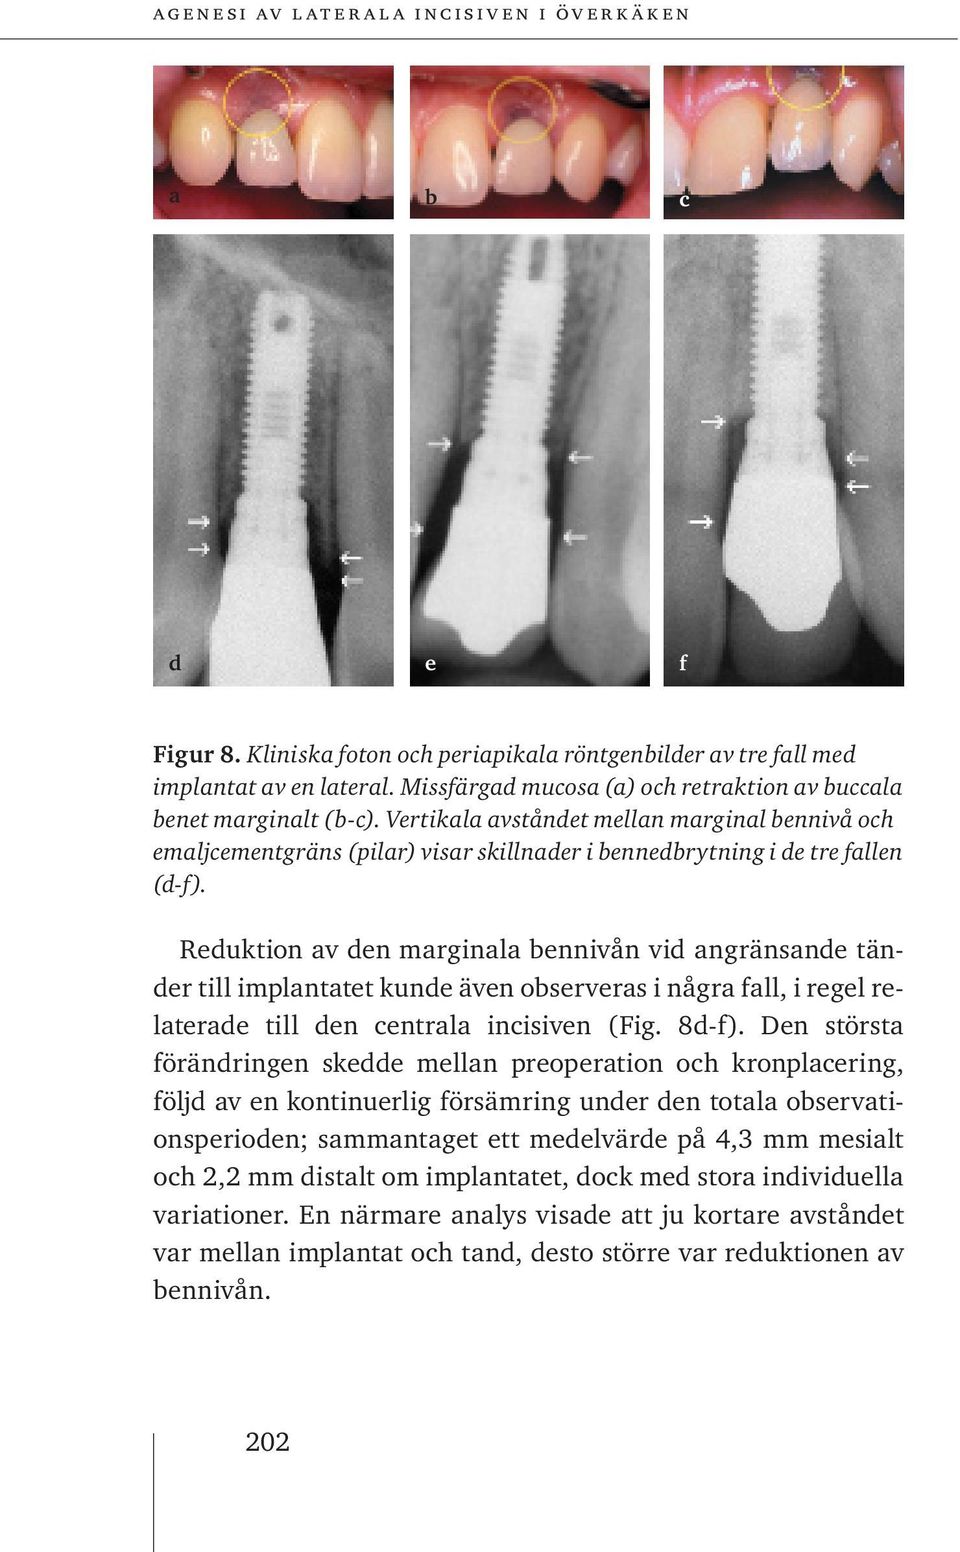 Reduktion av den marginala bennivån vid angränsande tänder till implantatet kunde även observeras i några fall, i regel relaterade till den centrala incisiven (Fig. 8d-f).